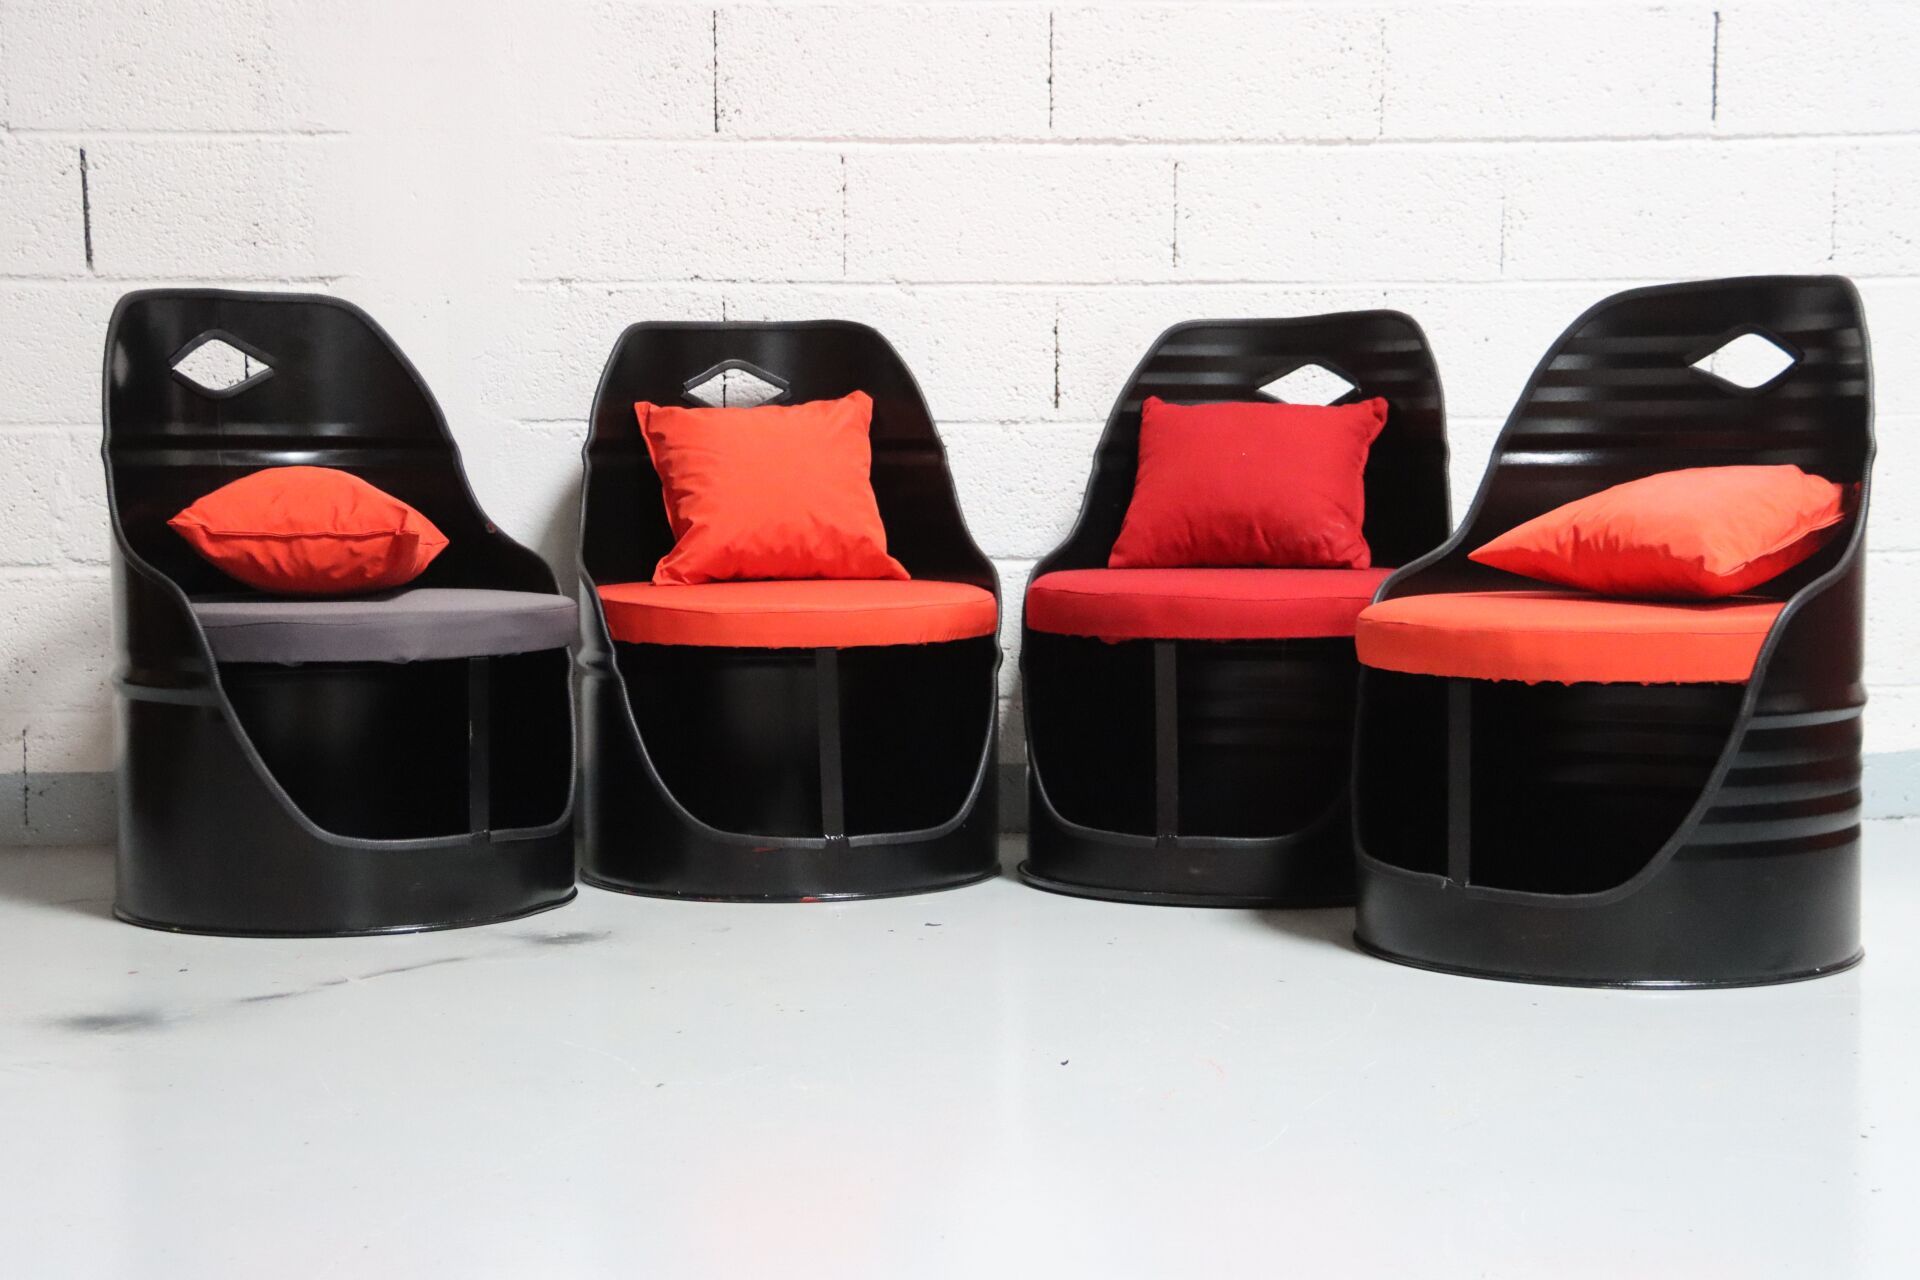 Null 用工业易拉罐制成的休息室，配有 4 把扶手椅。黑色。20 世纪作品。尺寸：43 x 60 x 60 厘米（咖啡桌）；座位高度：39 厘米；靠背高度：8&hellip;